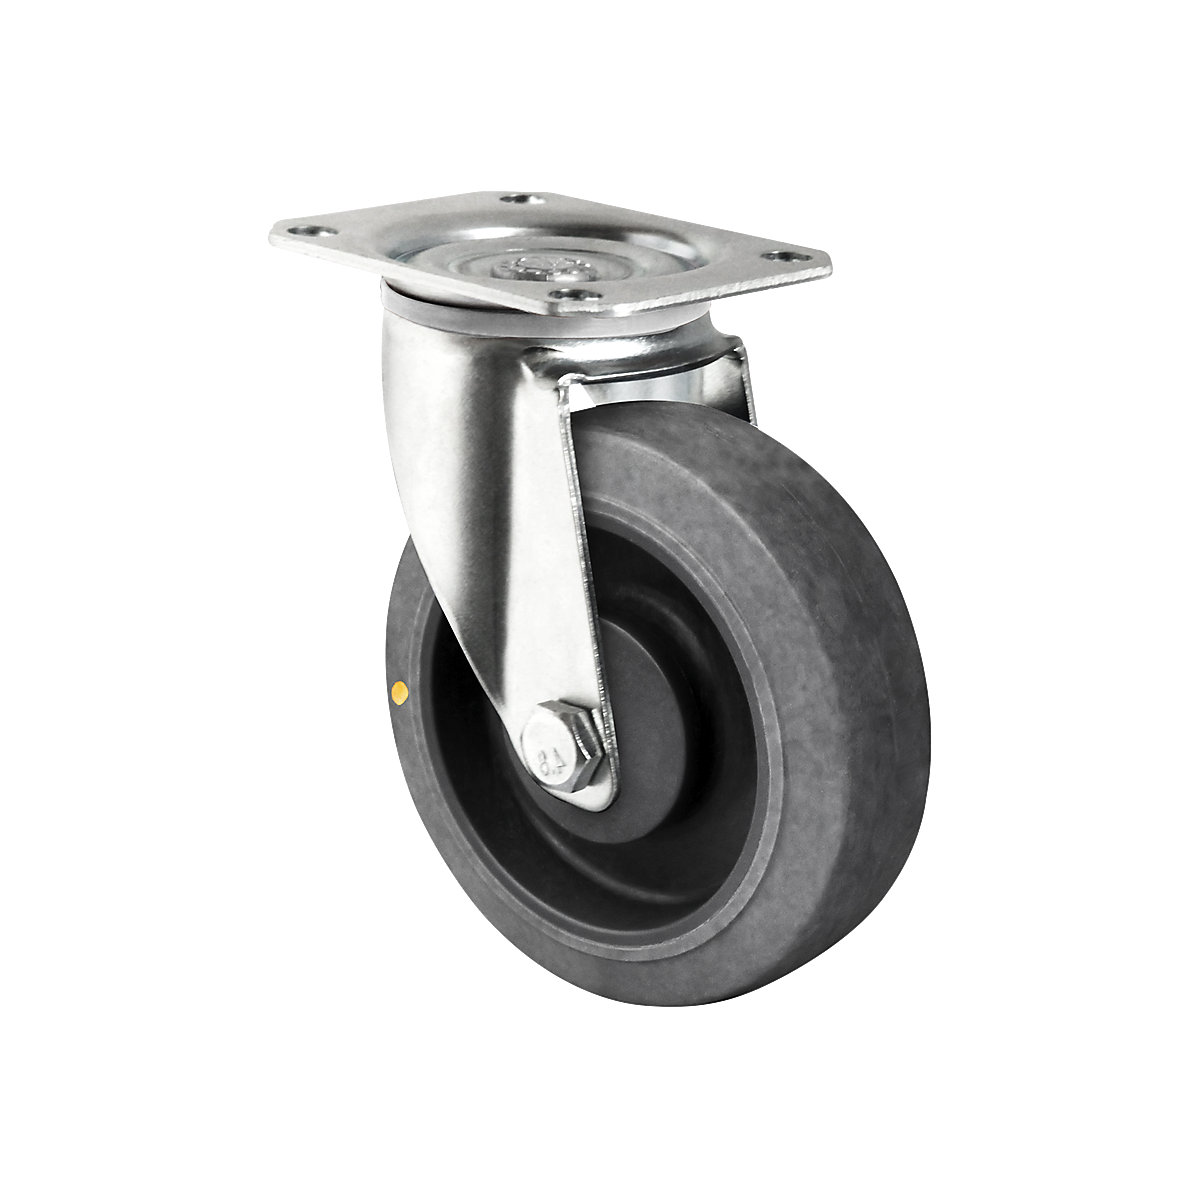 TPE tyre on PP rim, ESD, wheel Ø x width 125 x 40 mm, 2+ items, swivel castor